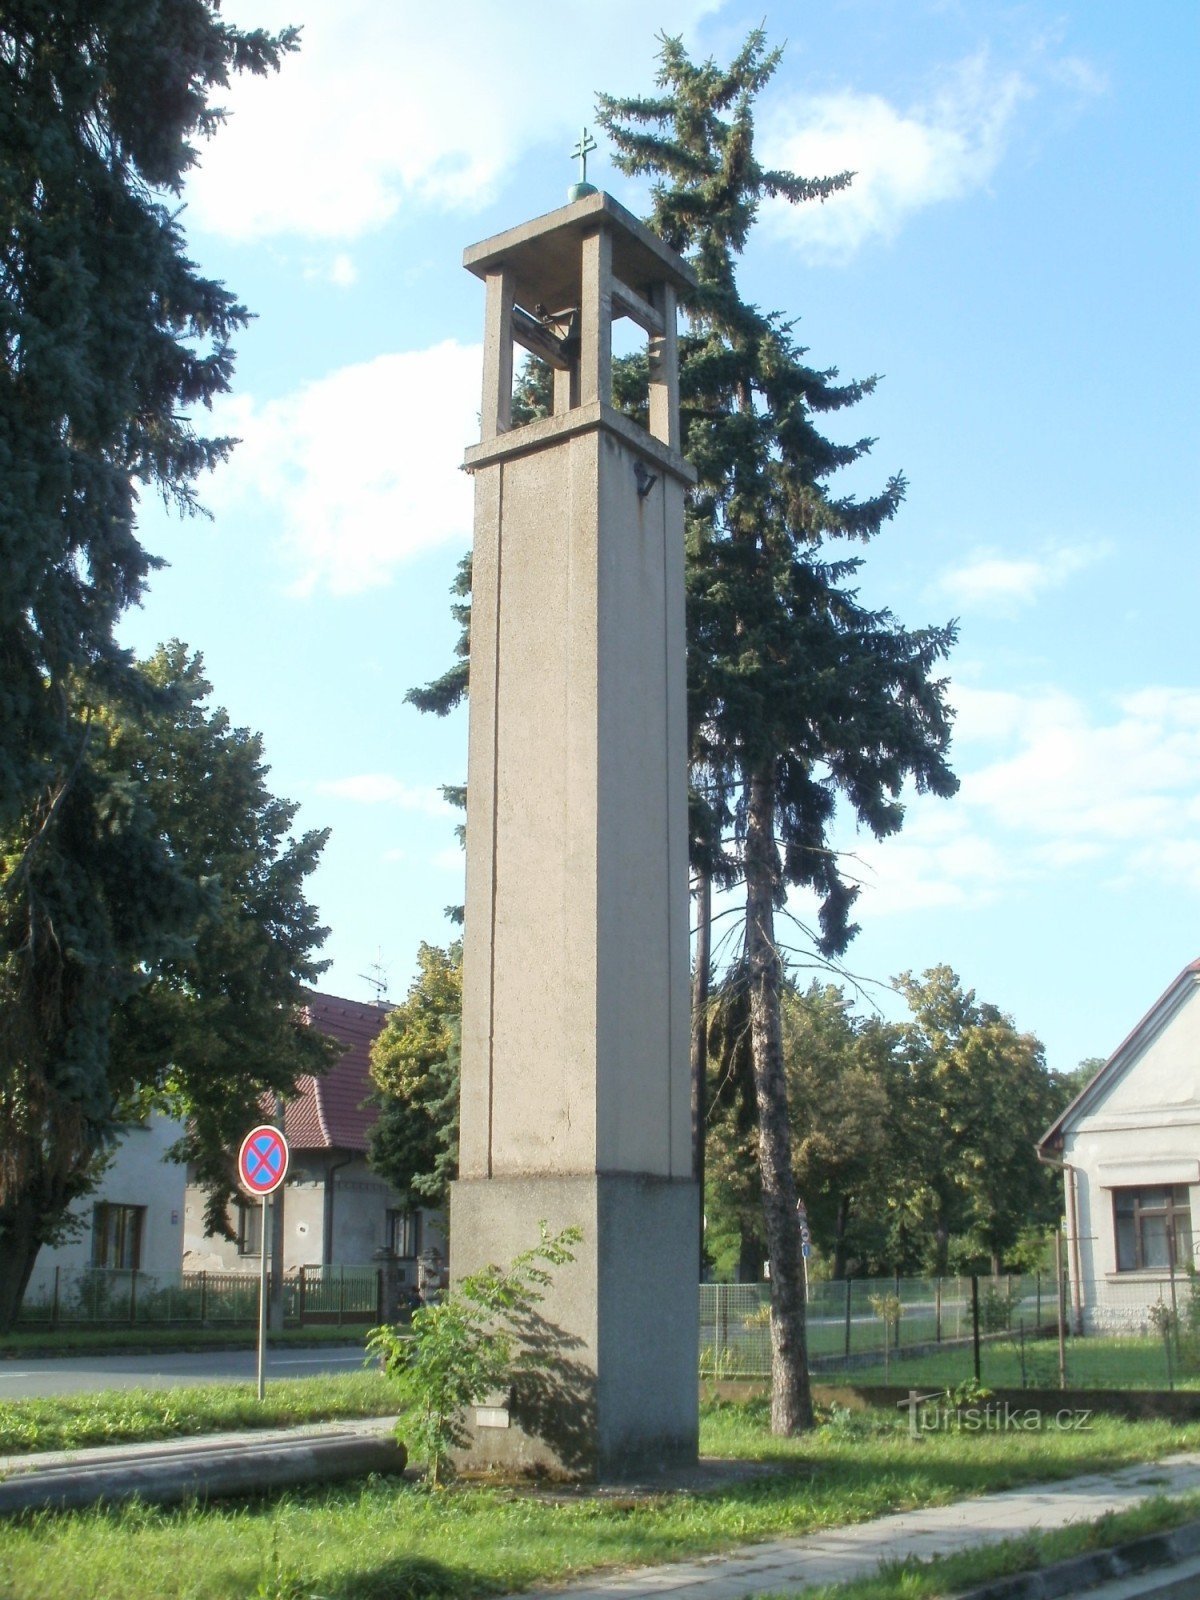 Hradec Králové - Pouchov の鐘楼